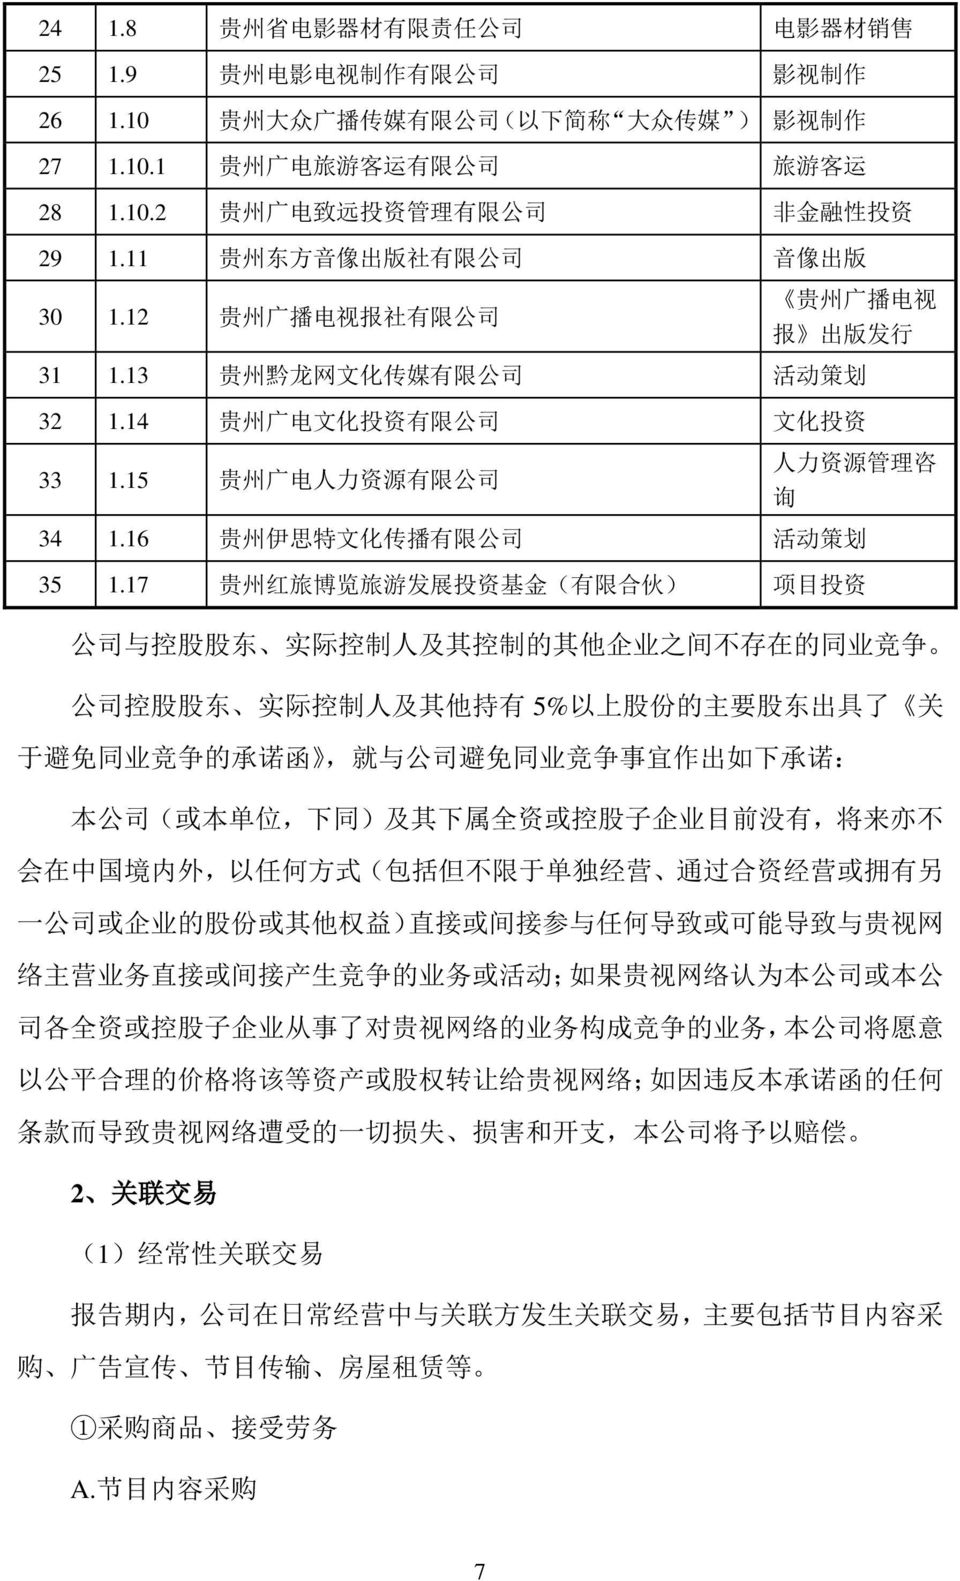 15 贵 州 广 电 人 力 资 源 有 限 公 司 人 力 资 源 管 理 咨 询 34 1.16 贵 州 伊 思 特 文 化 传 播 有 限 公 司 活 动 策 划 35 1.